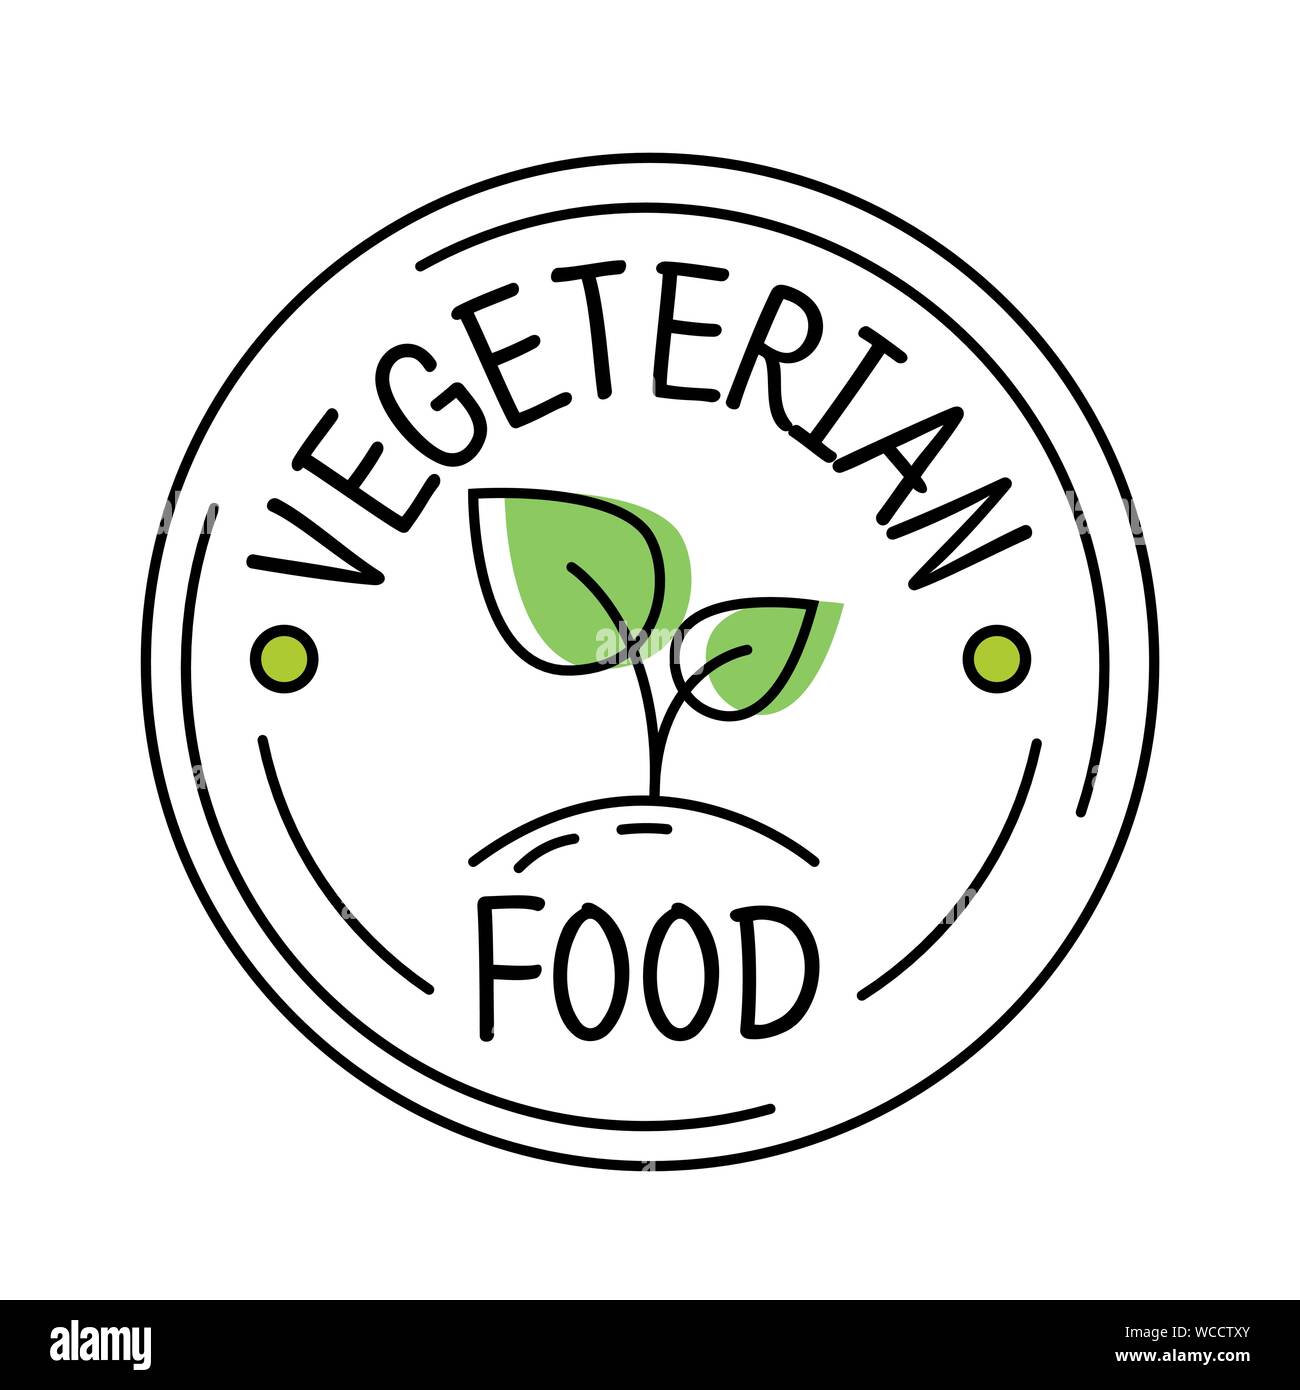 Vegetarisches Essen label line style Logo mit grünem Blatt Aufkleber Vorlage für Produktverpackungen, Vektor Stock Vektor